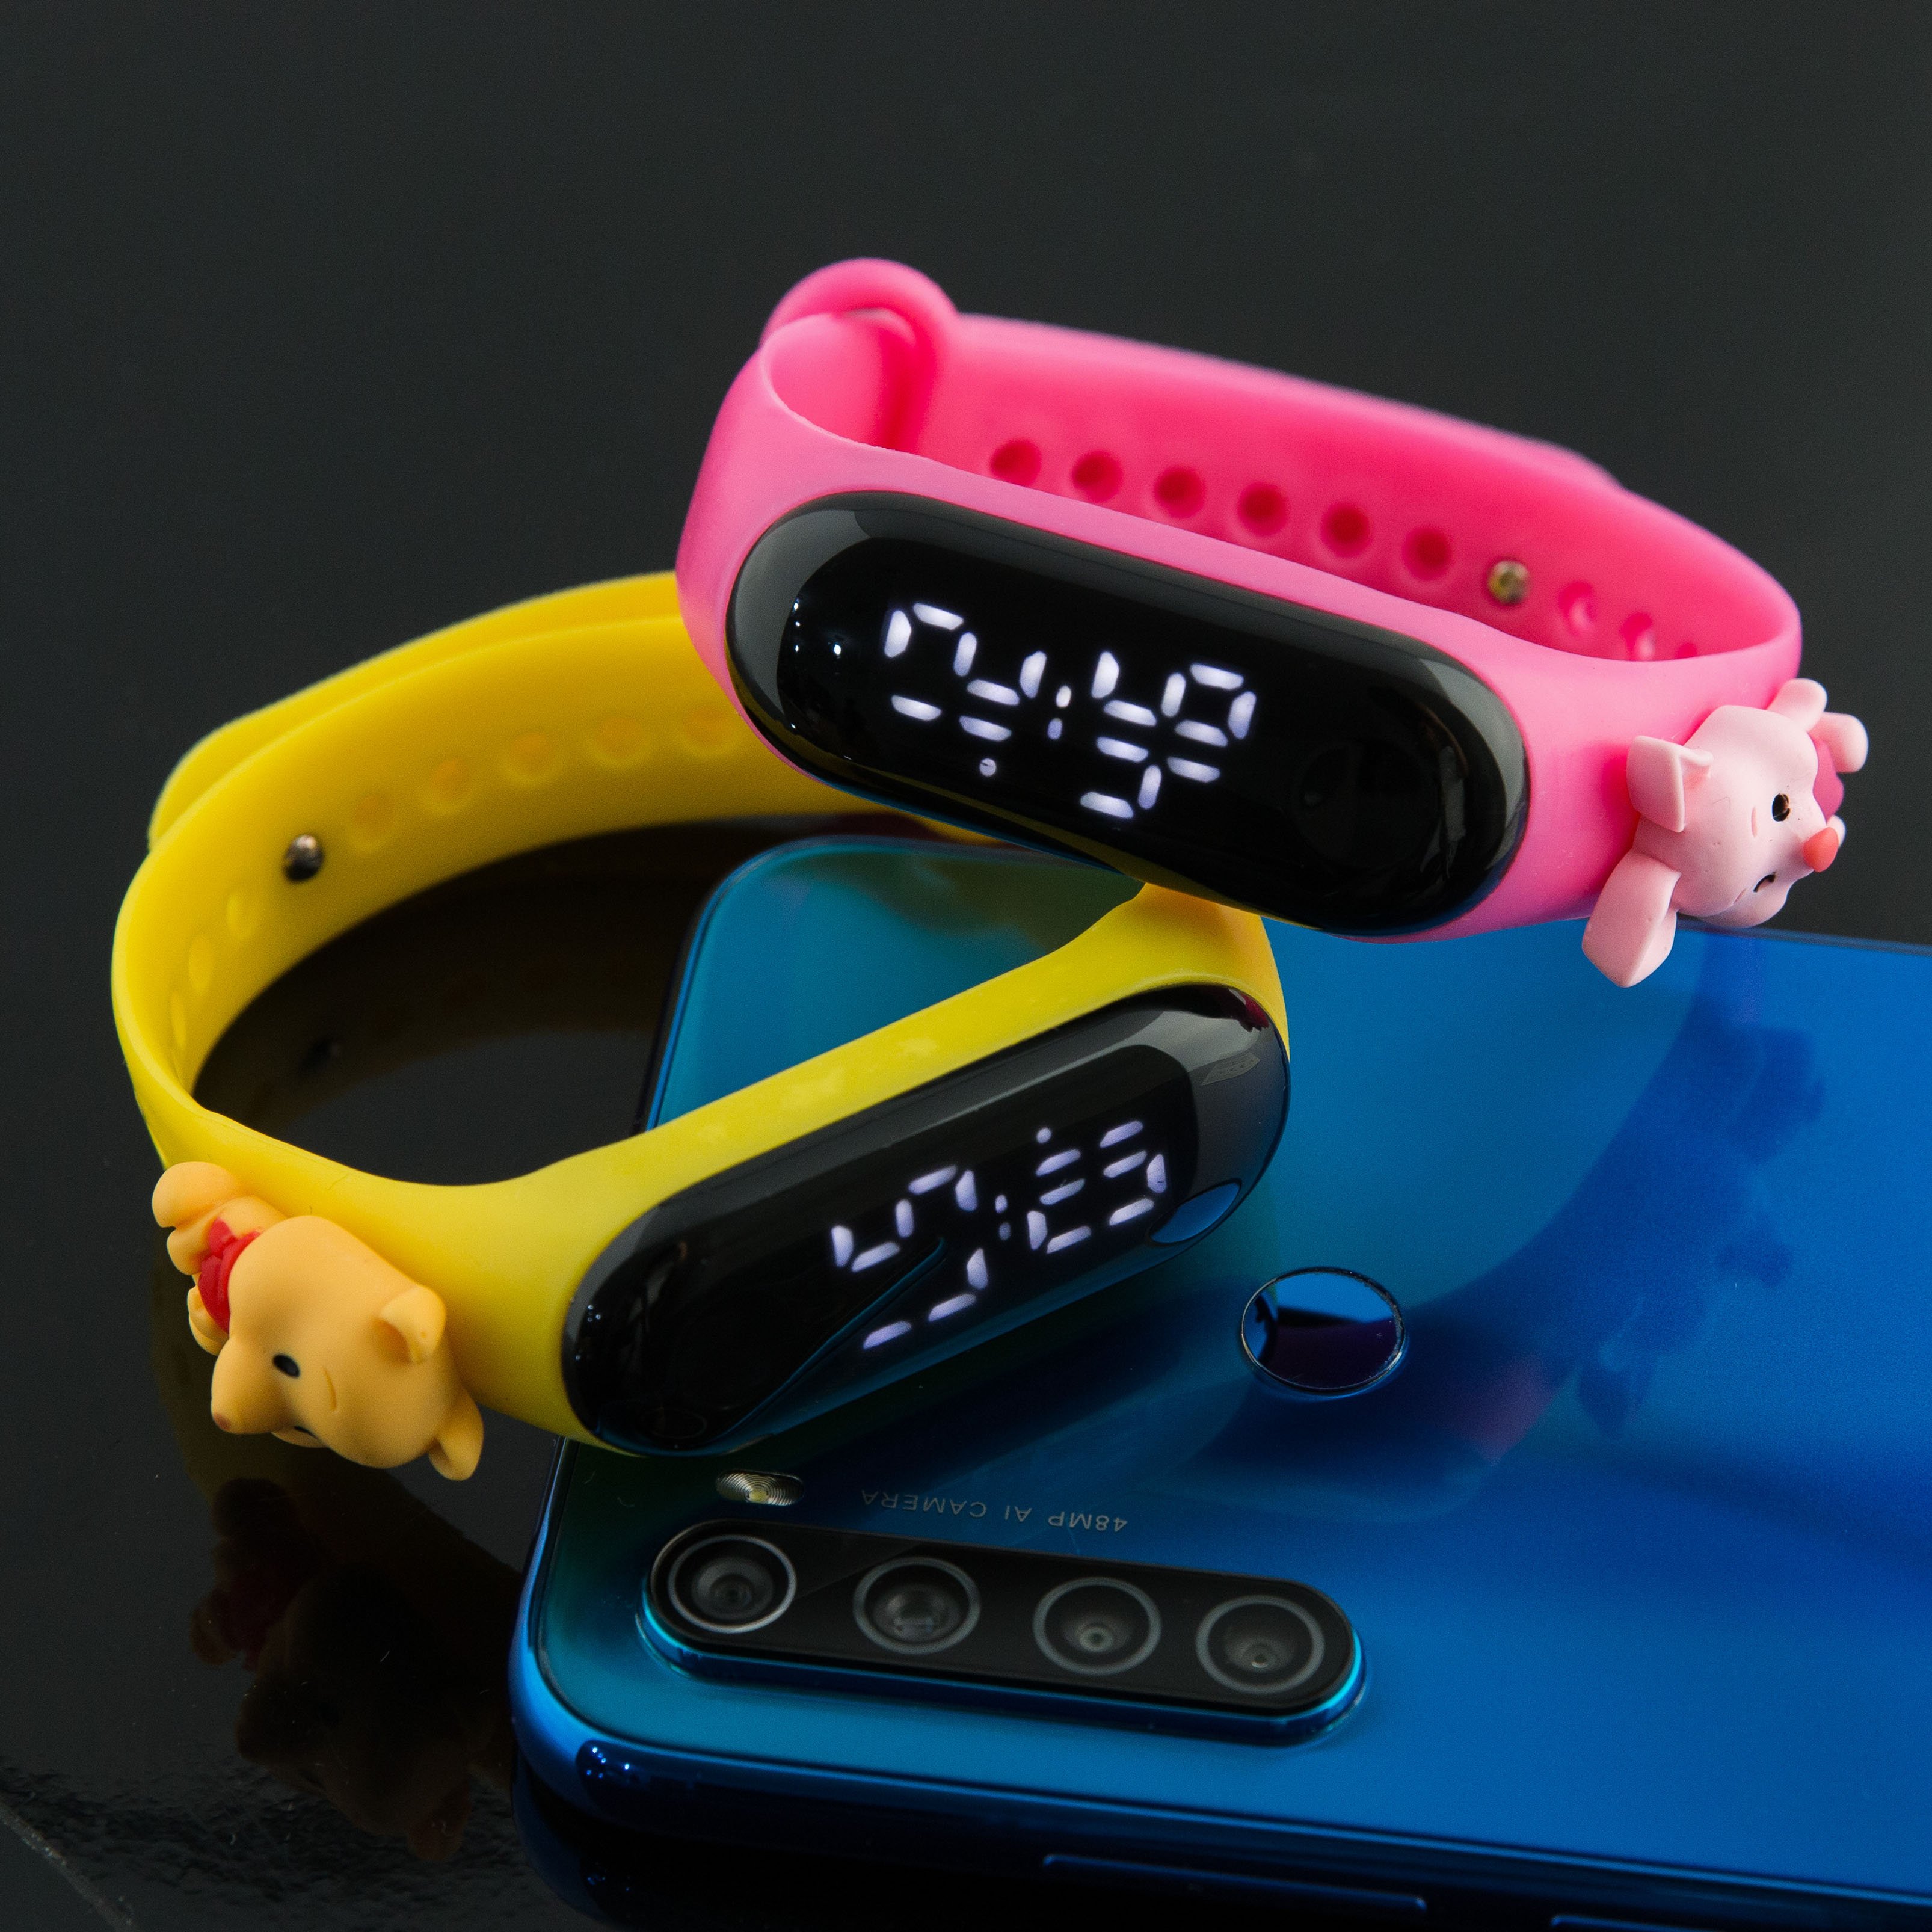 Đồng hồ điện tử UNISEX màn hình led hiển thị cực cool – Dây đeo silicone